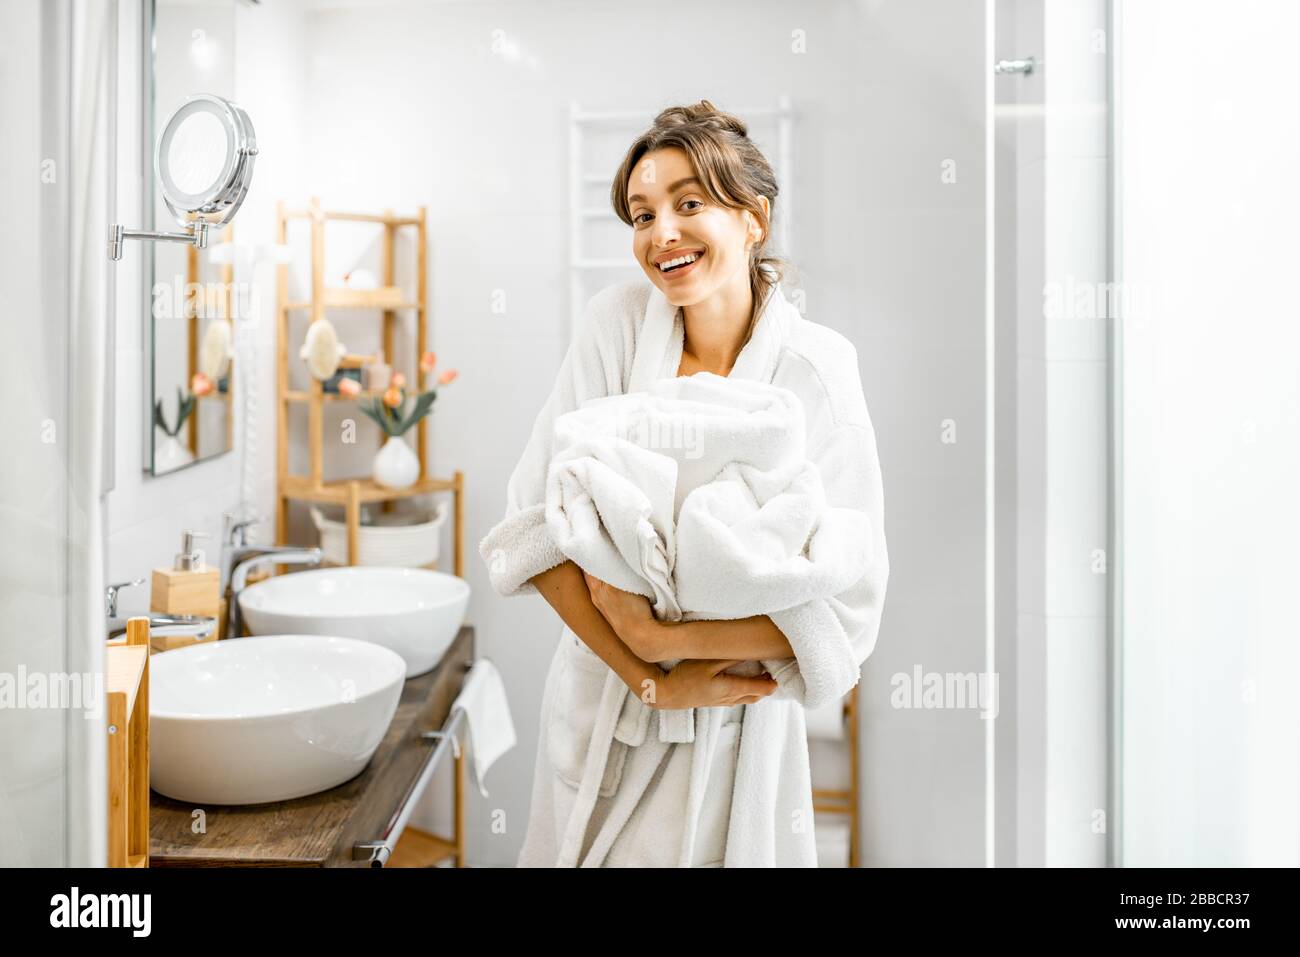 Jeune femme en peignoir faisant des travaux ménagers, debout avec des serviettes dans la salle de bains Banque D'Images